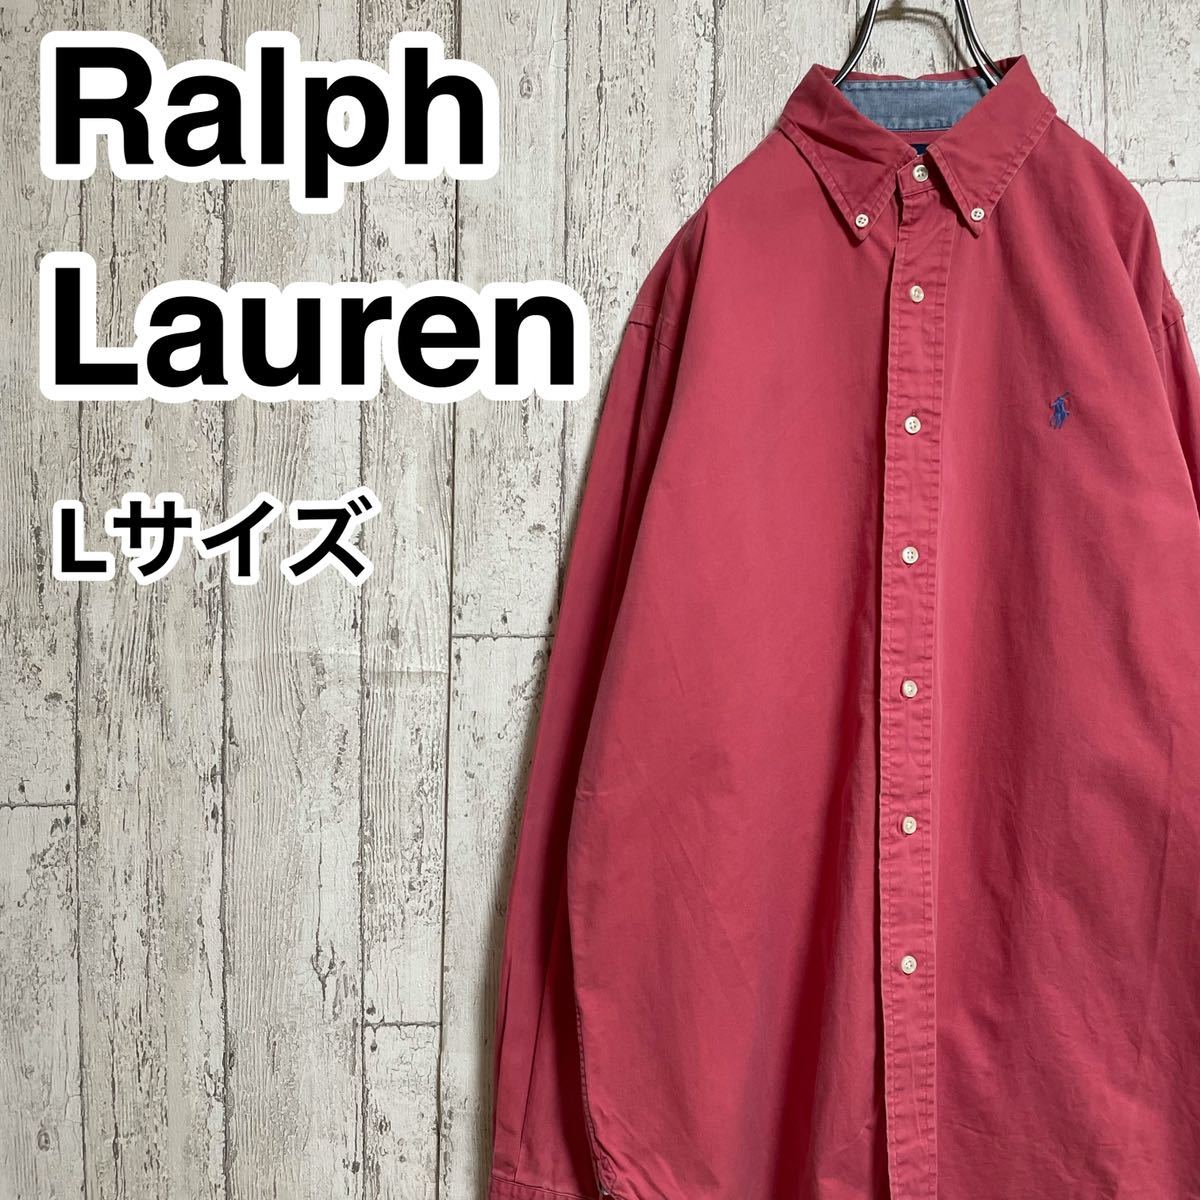 ☆送料無料☆ RALPH LAUREN ラルフローレン 長袖 ボタンダウンシャツ Lサイズ フェアリーピンク 刺繍ポニー 21-274